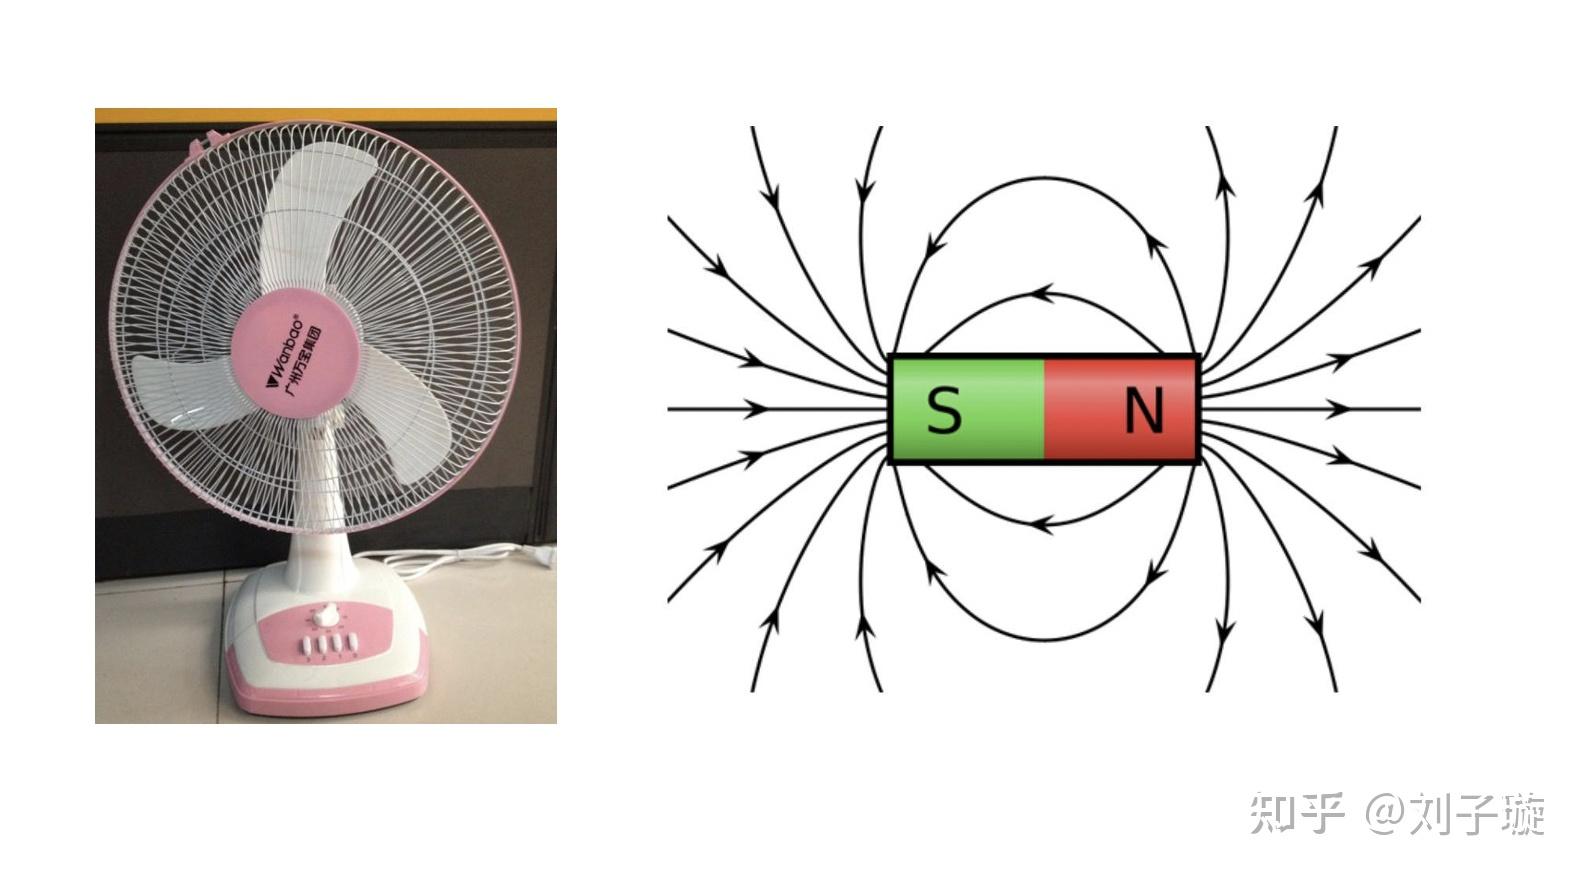 为什么电风扇前后两个放射状网交叉后会看到类似条形磁铁磁感线的图像